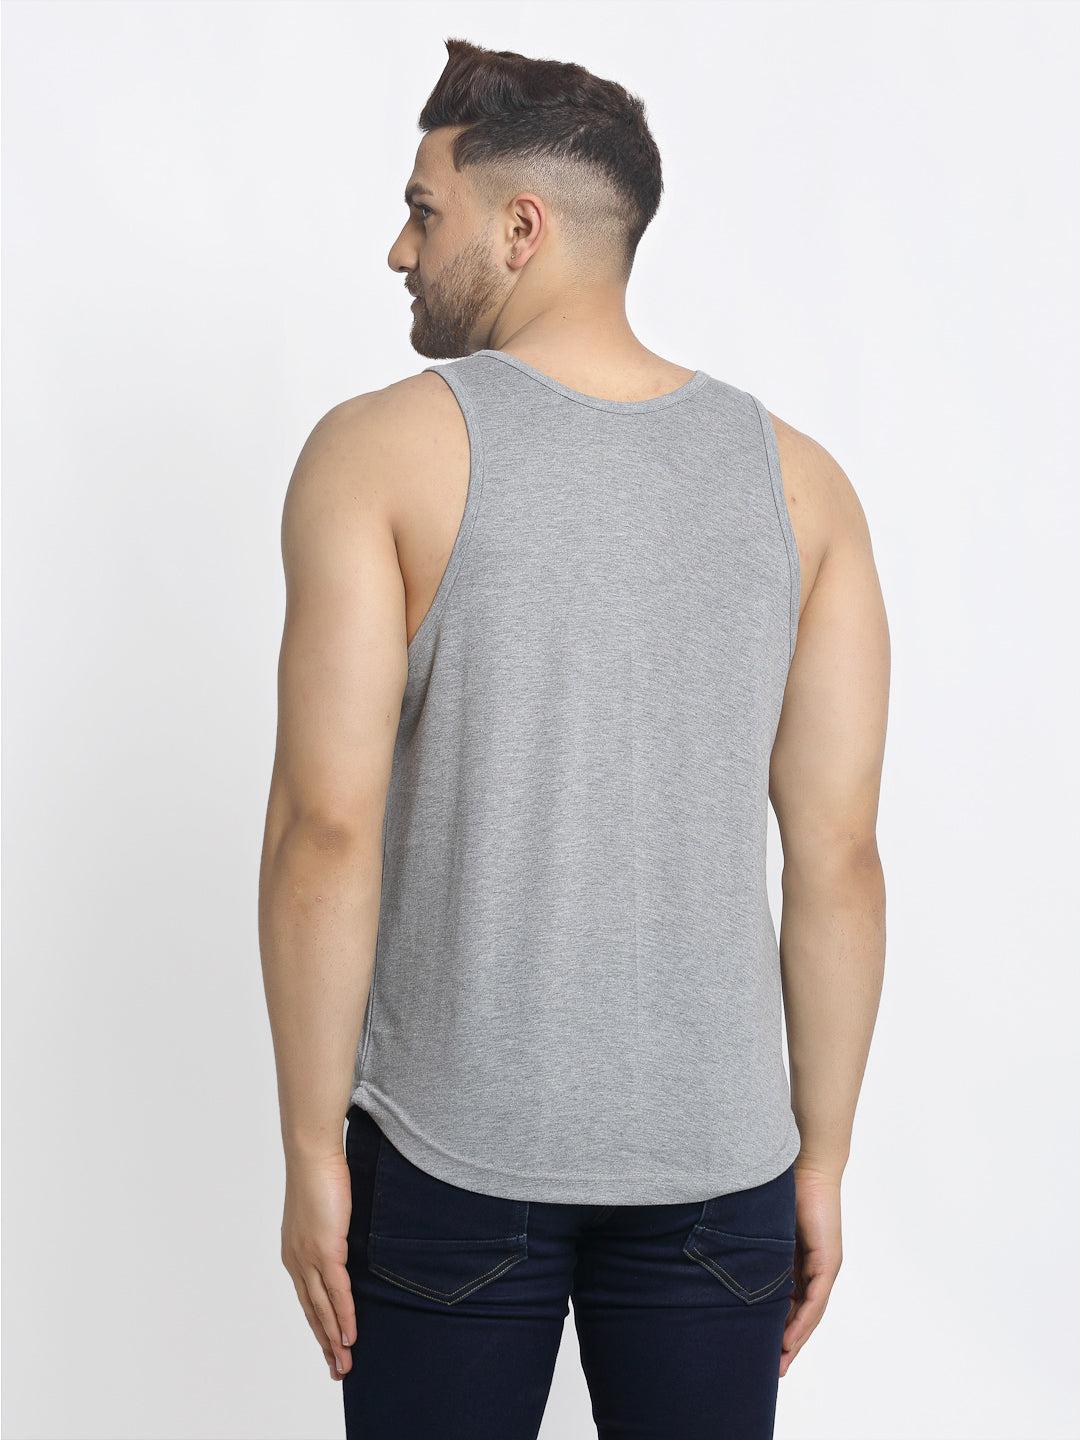 Men's Pack of 2 Grey & Black Printed Gym Vest - Friskers